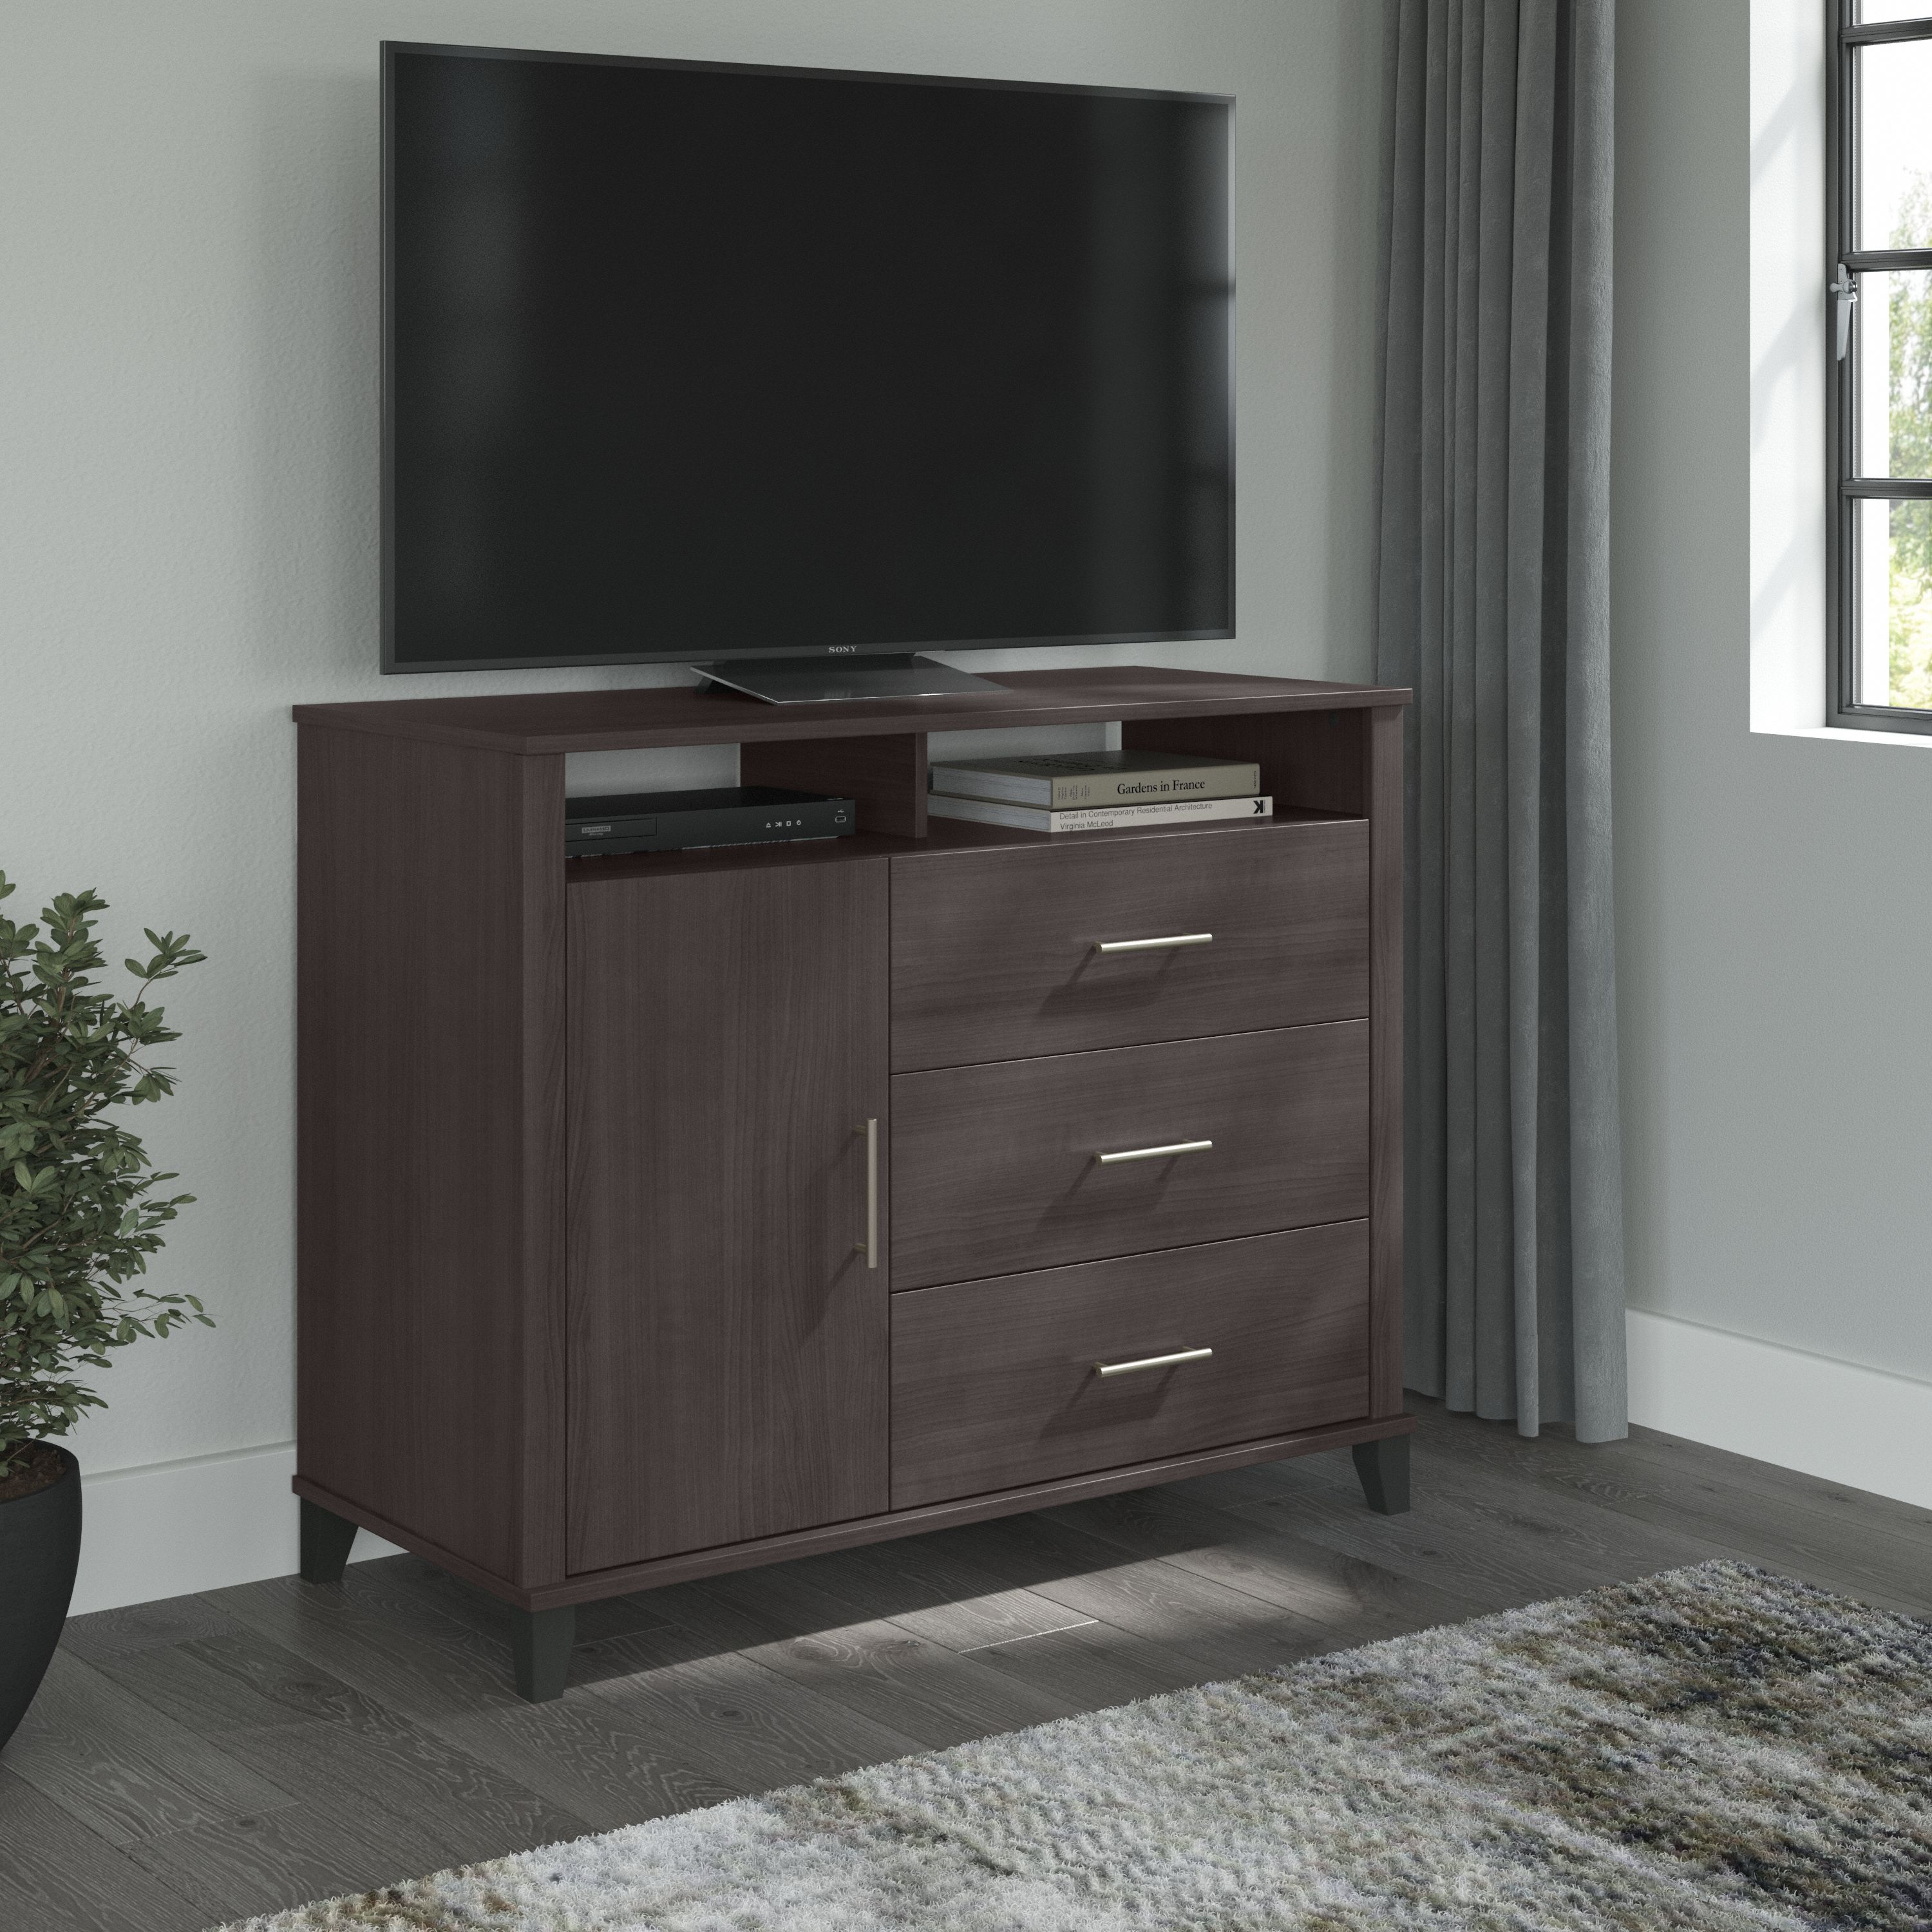 Shop Bush Furniture Somerset 3 Drawer Dresser and Bedroom TV Stand 01 STV148SGK #color_storm gray